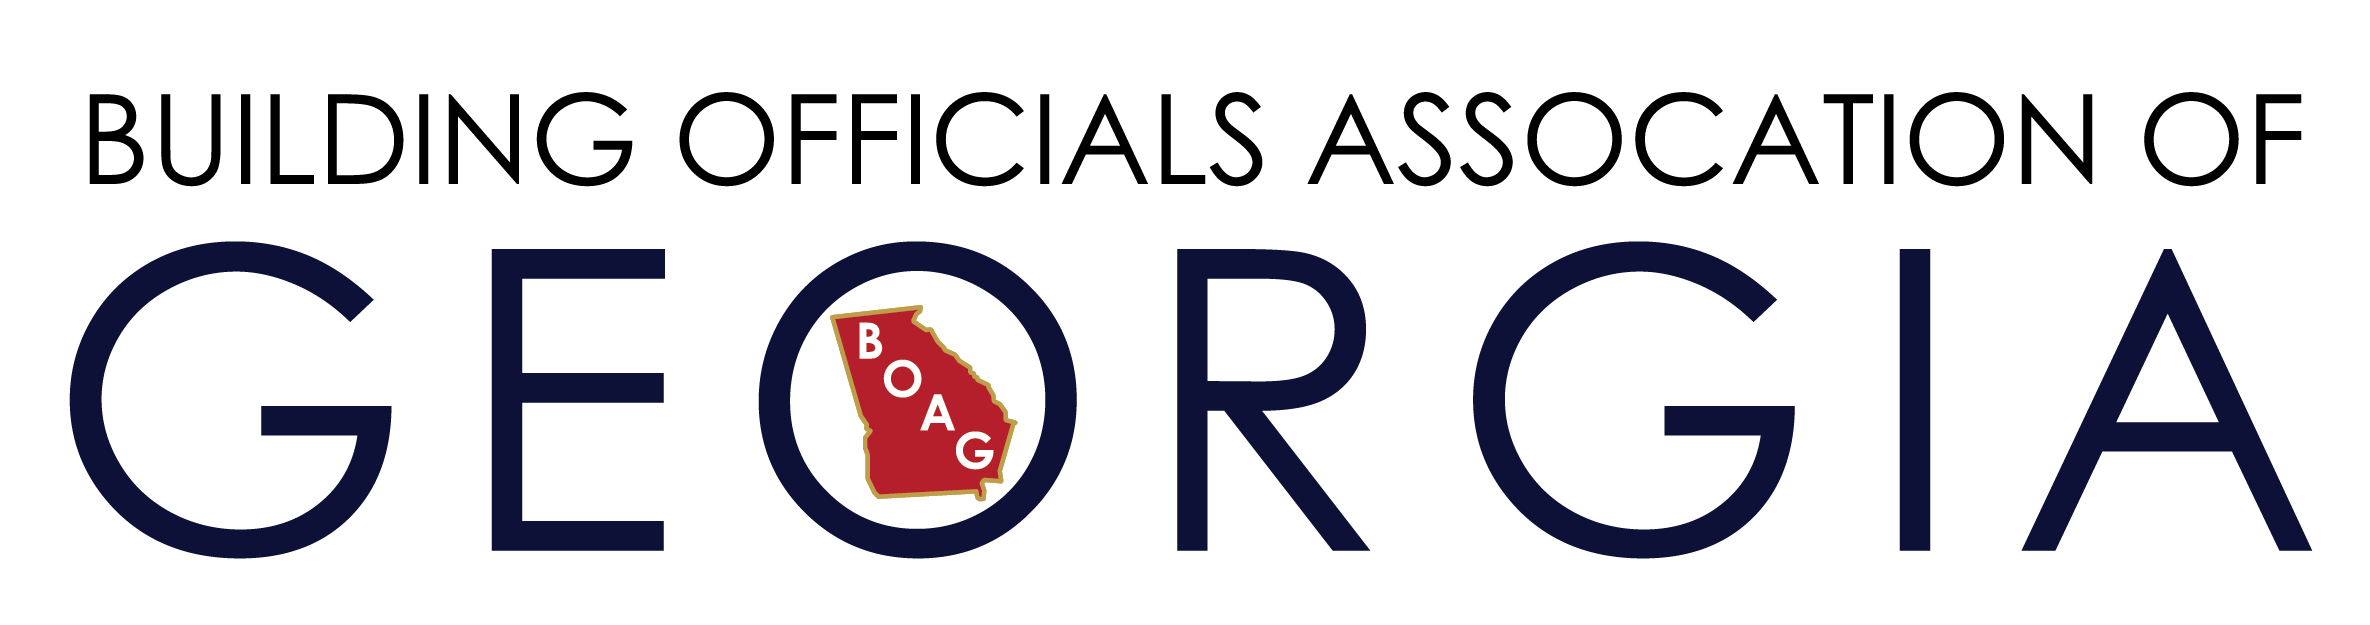 Building officials association of Georgia logo